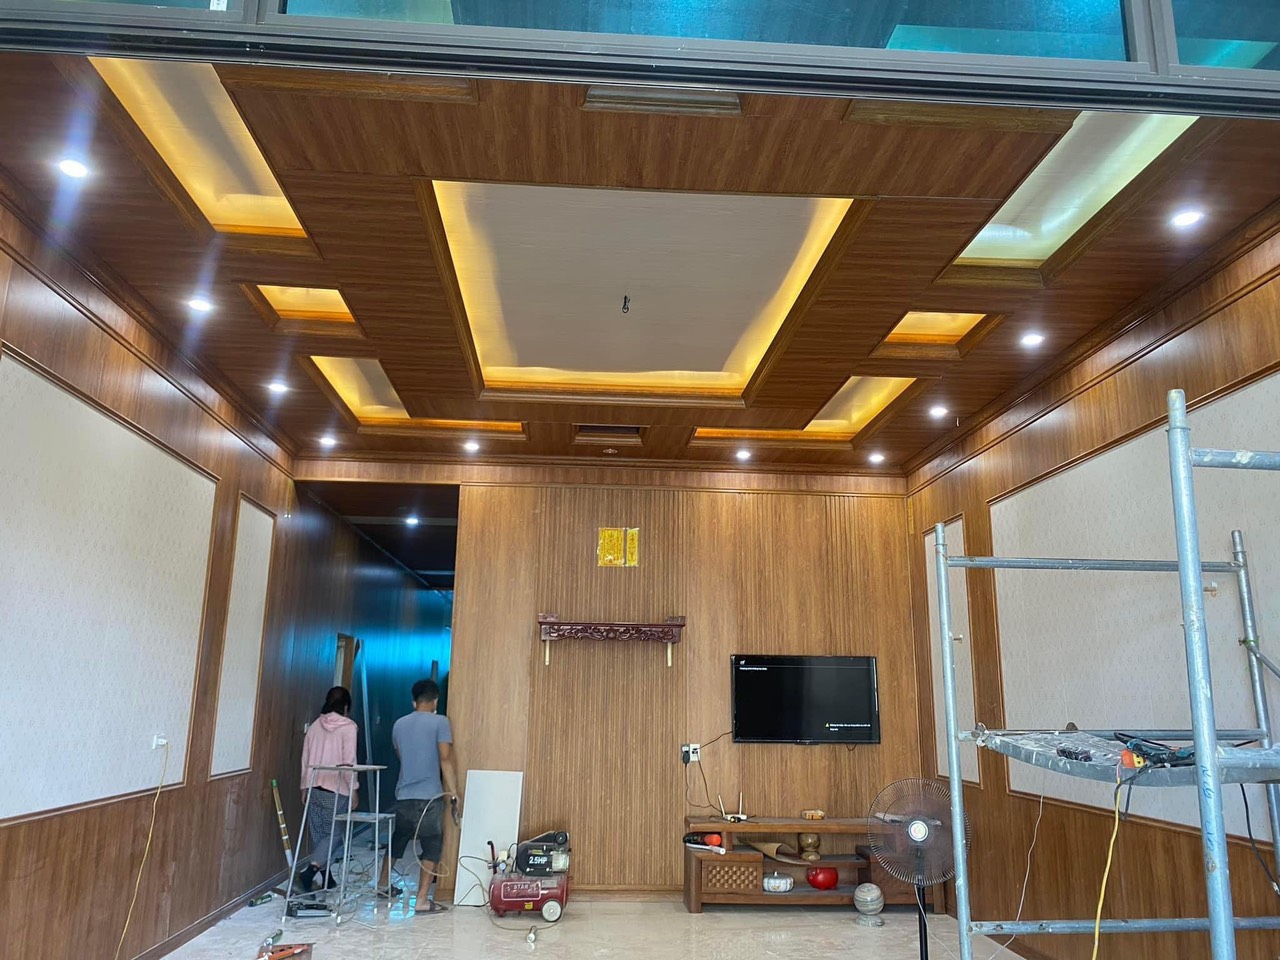 Ốp trần trong nhà tại Đồng Xuân - Phú Yên